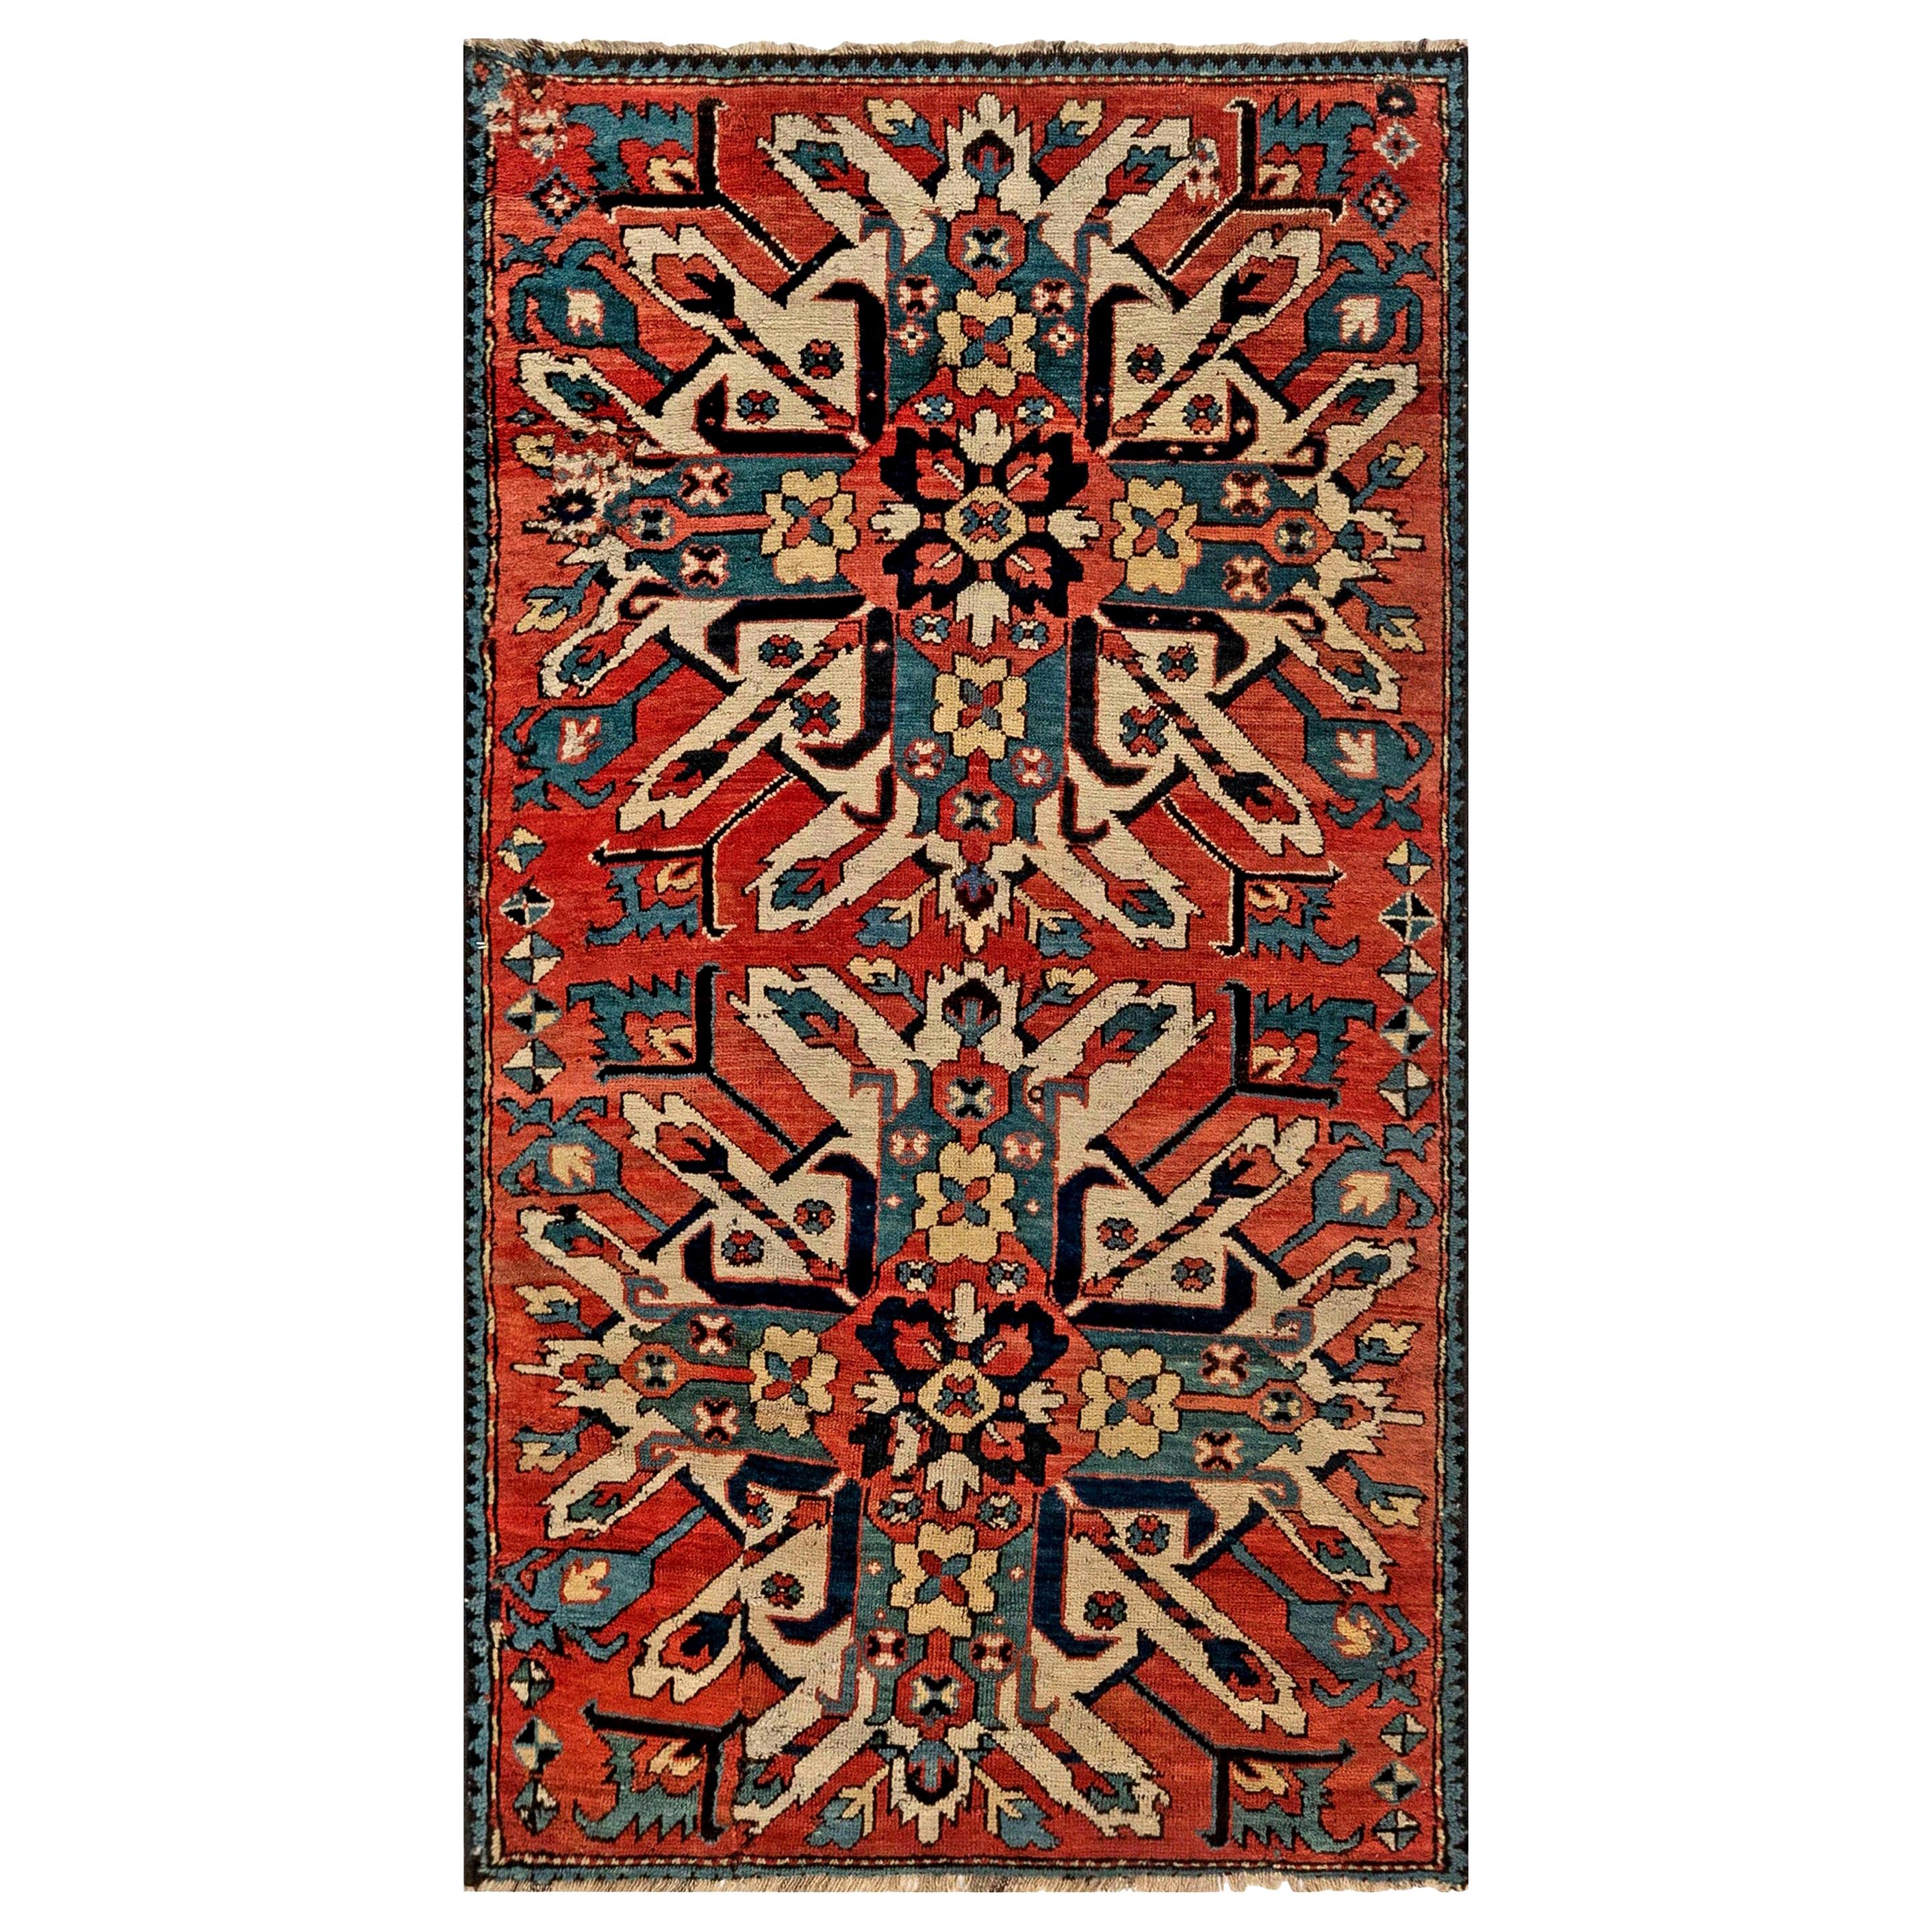 1920s Kazak Blue, Red and White Handmade Wool Rug